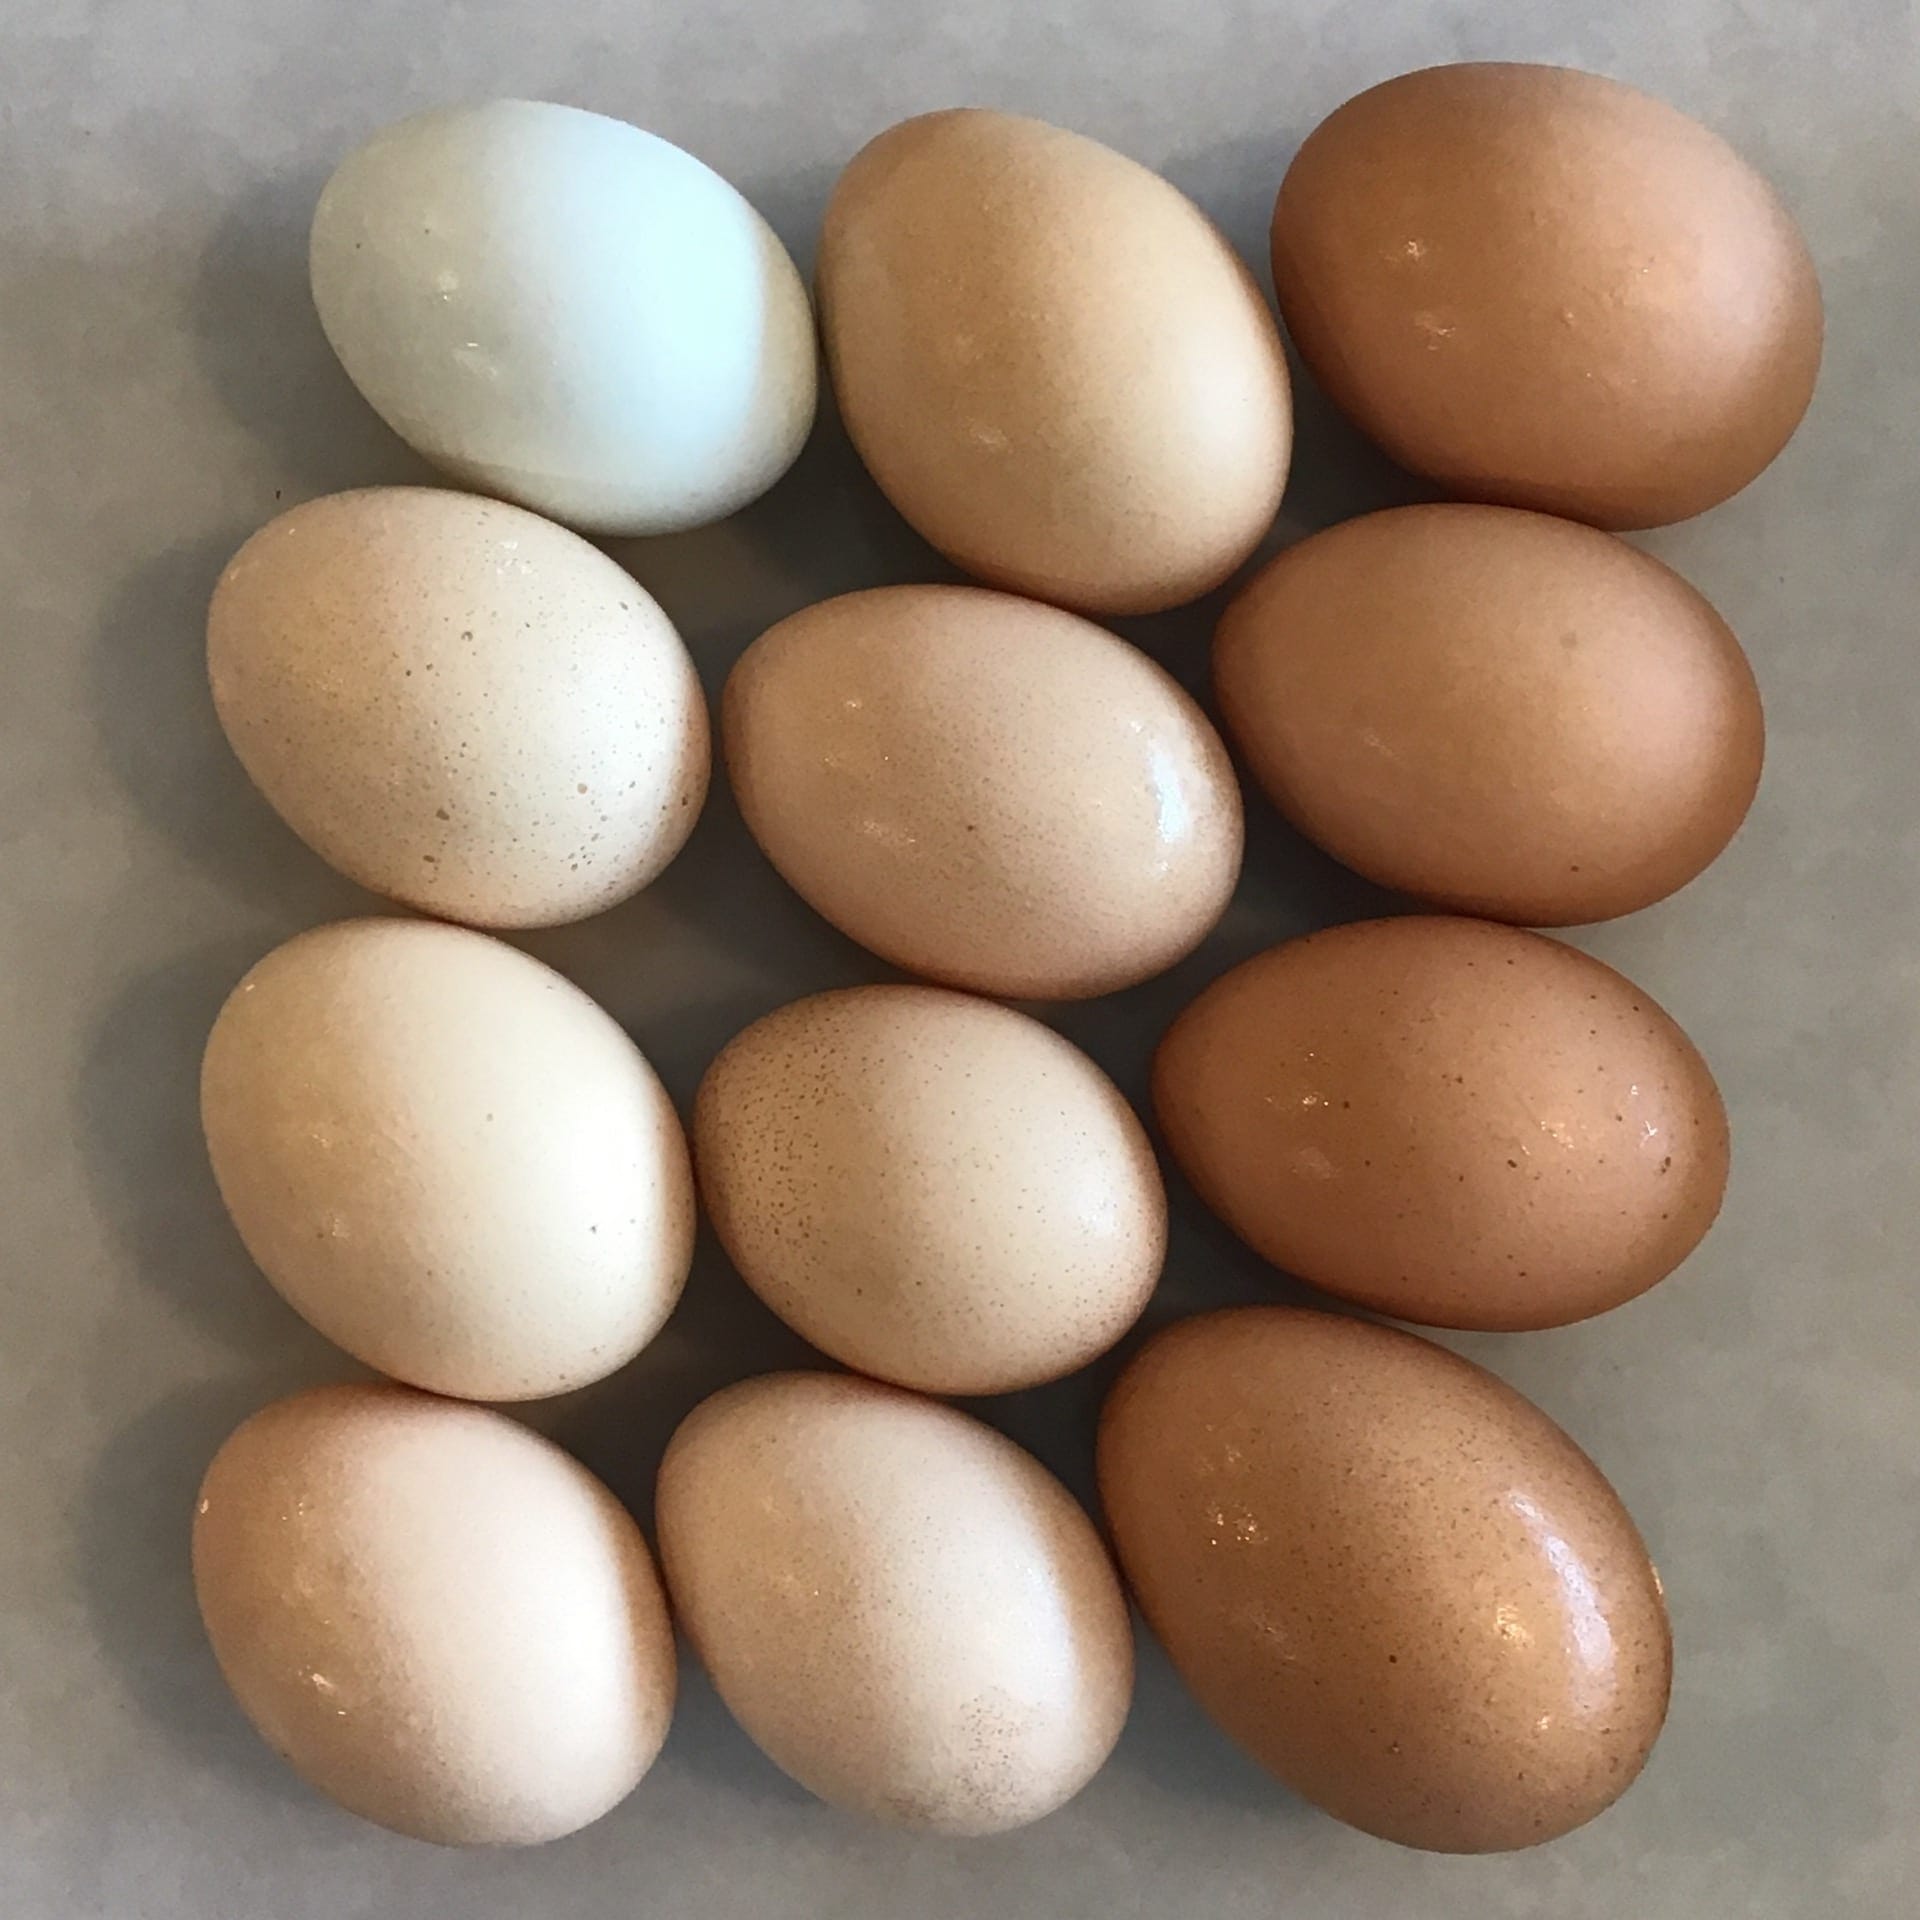 eggs free range dozen brun ko farms